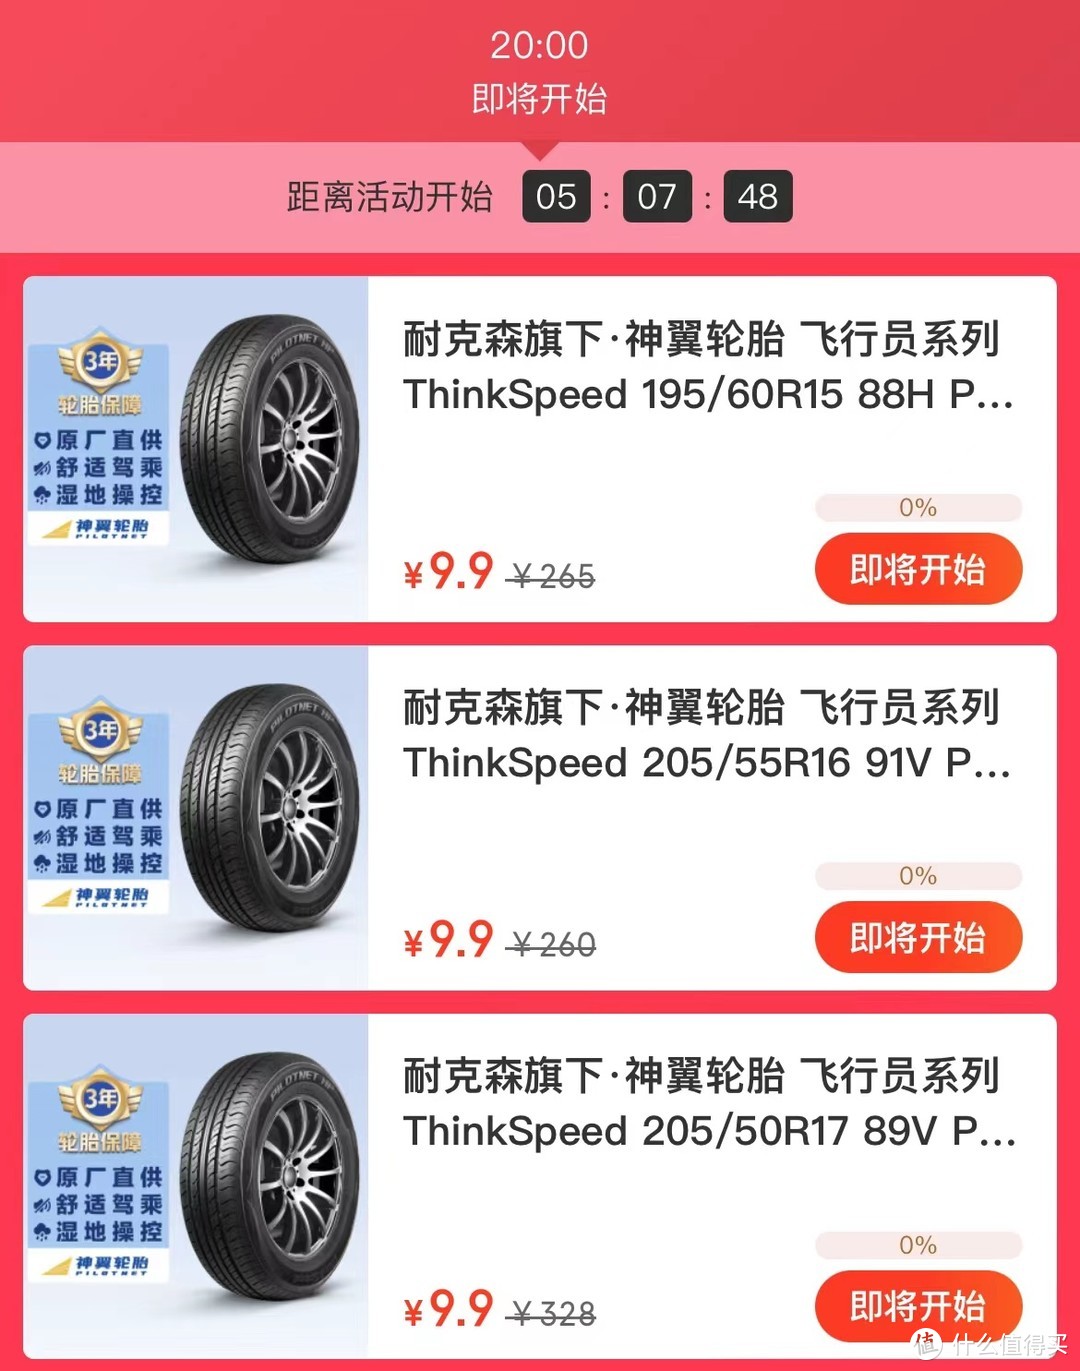 双12，途虎9.9元轮胎秒杀，京东99元轮胎直接购买，到底谁更胜一筹？